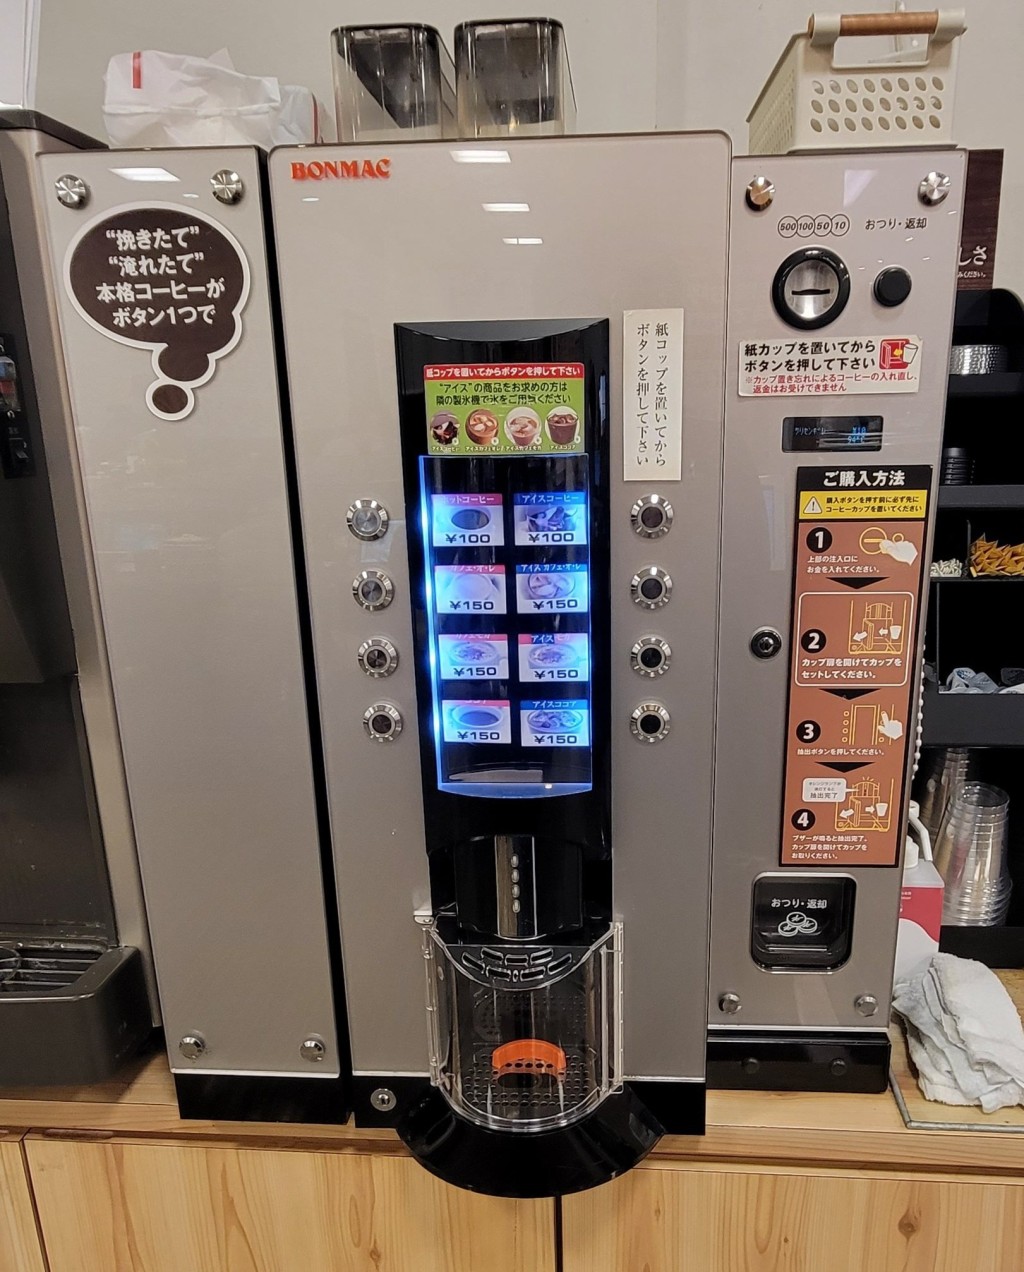 日本便利店的自助咖啡机。 X